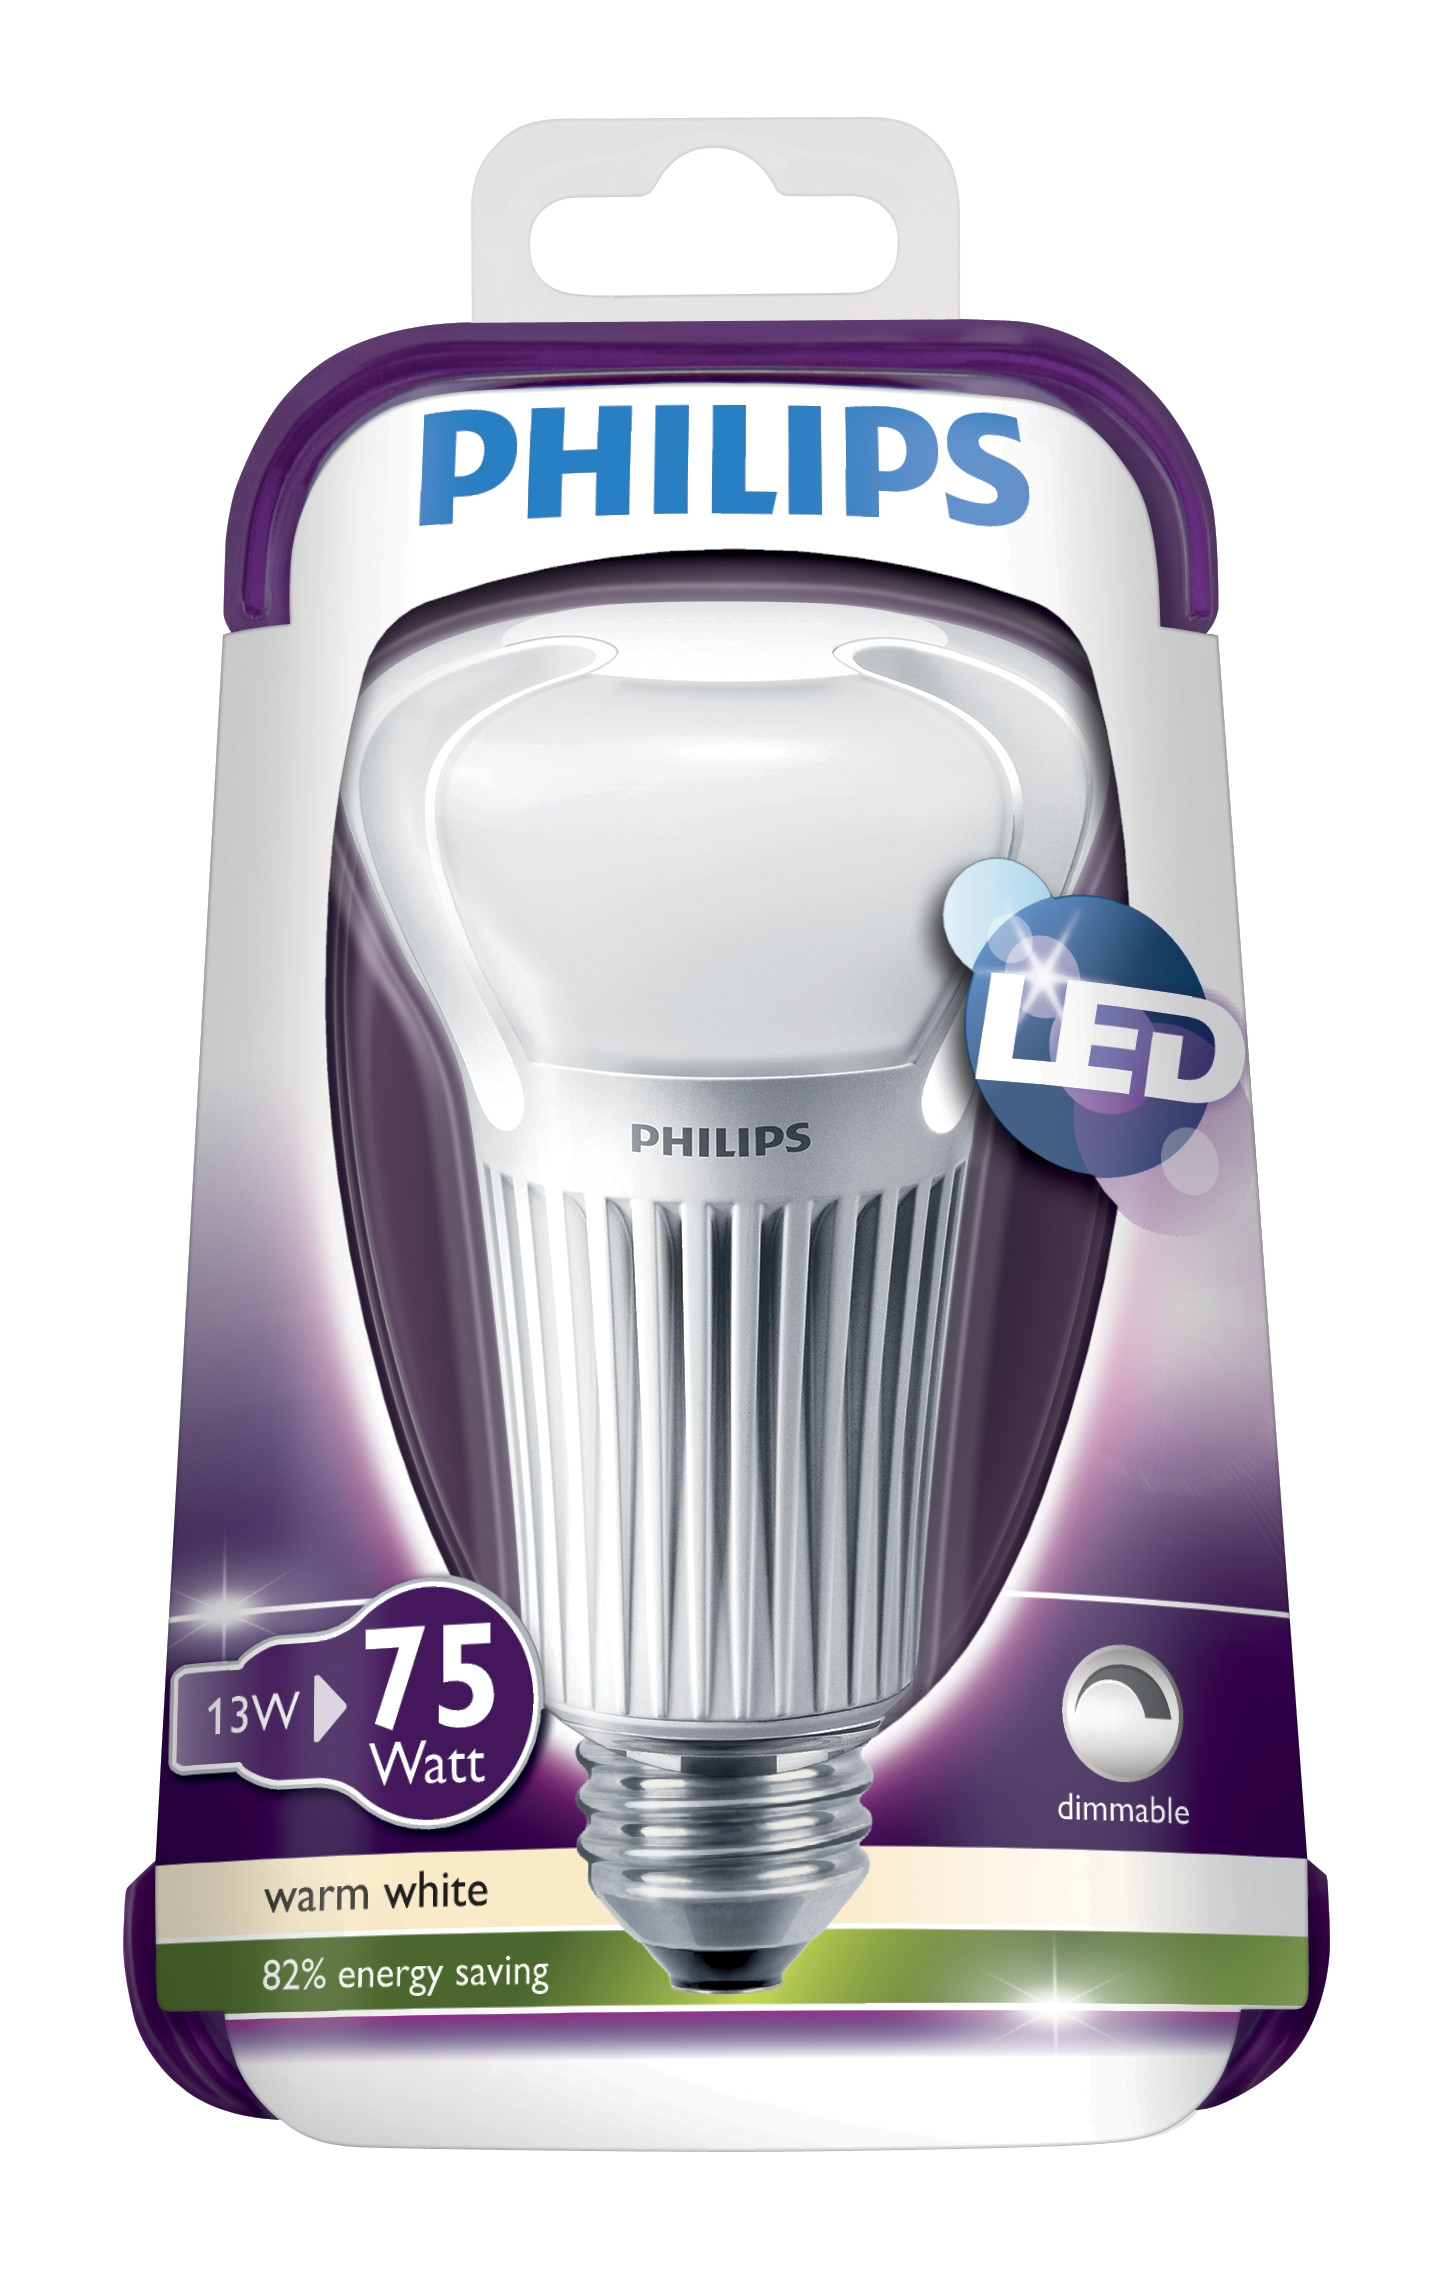 Филипс мастер. Philips Dory led Lamp. Лампочка Филипс Master LEDBULB MV 805lm цена.